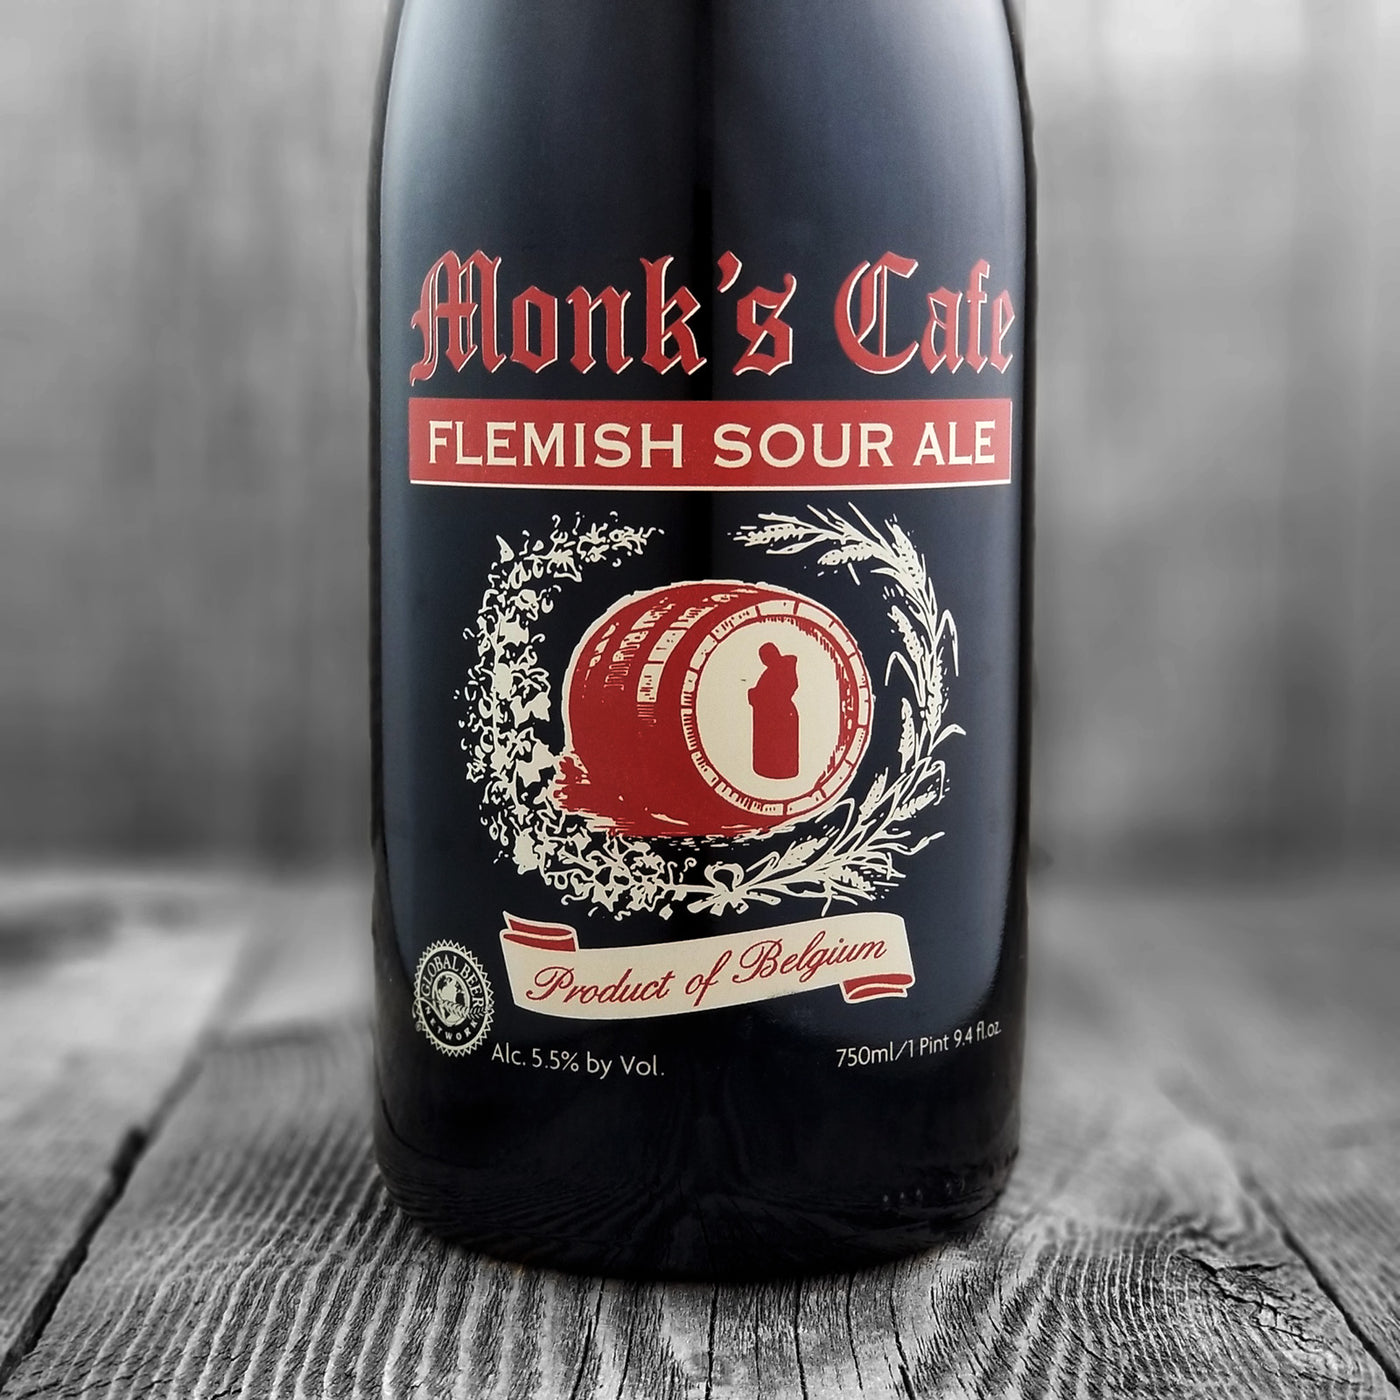 Monk's Cafe Flemish Sour Ale